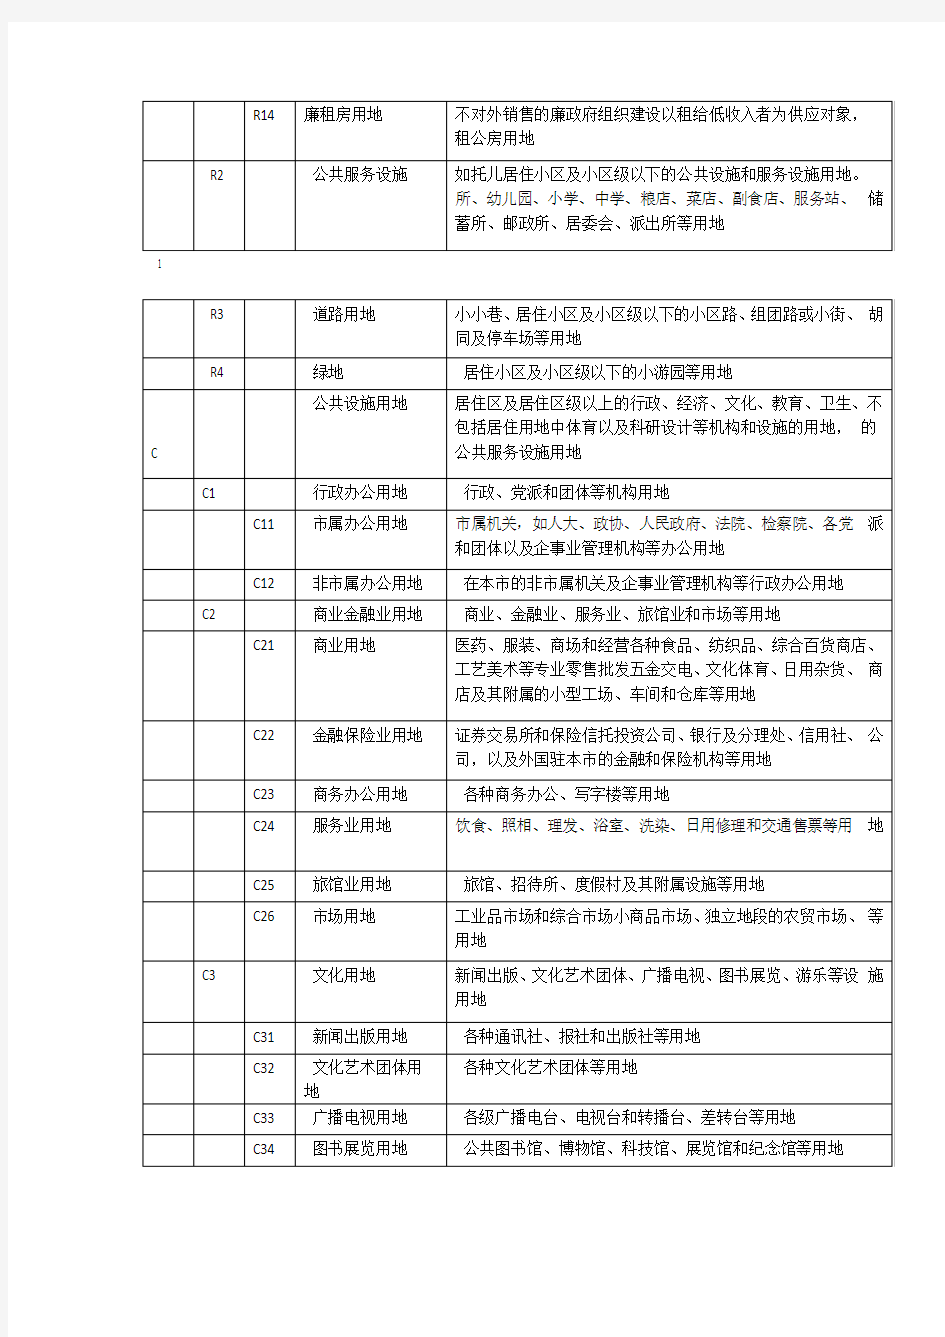 北京用地性质分类与标准汇总